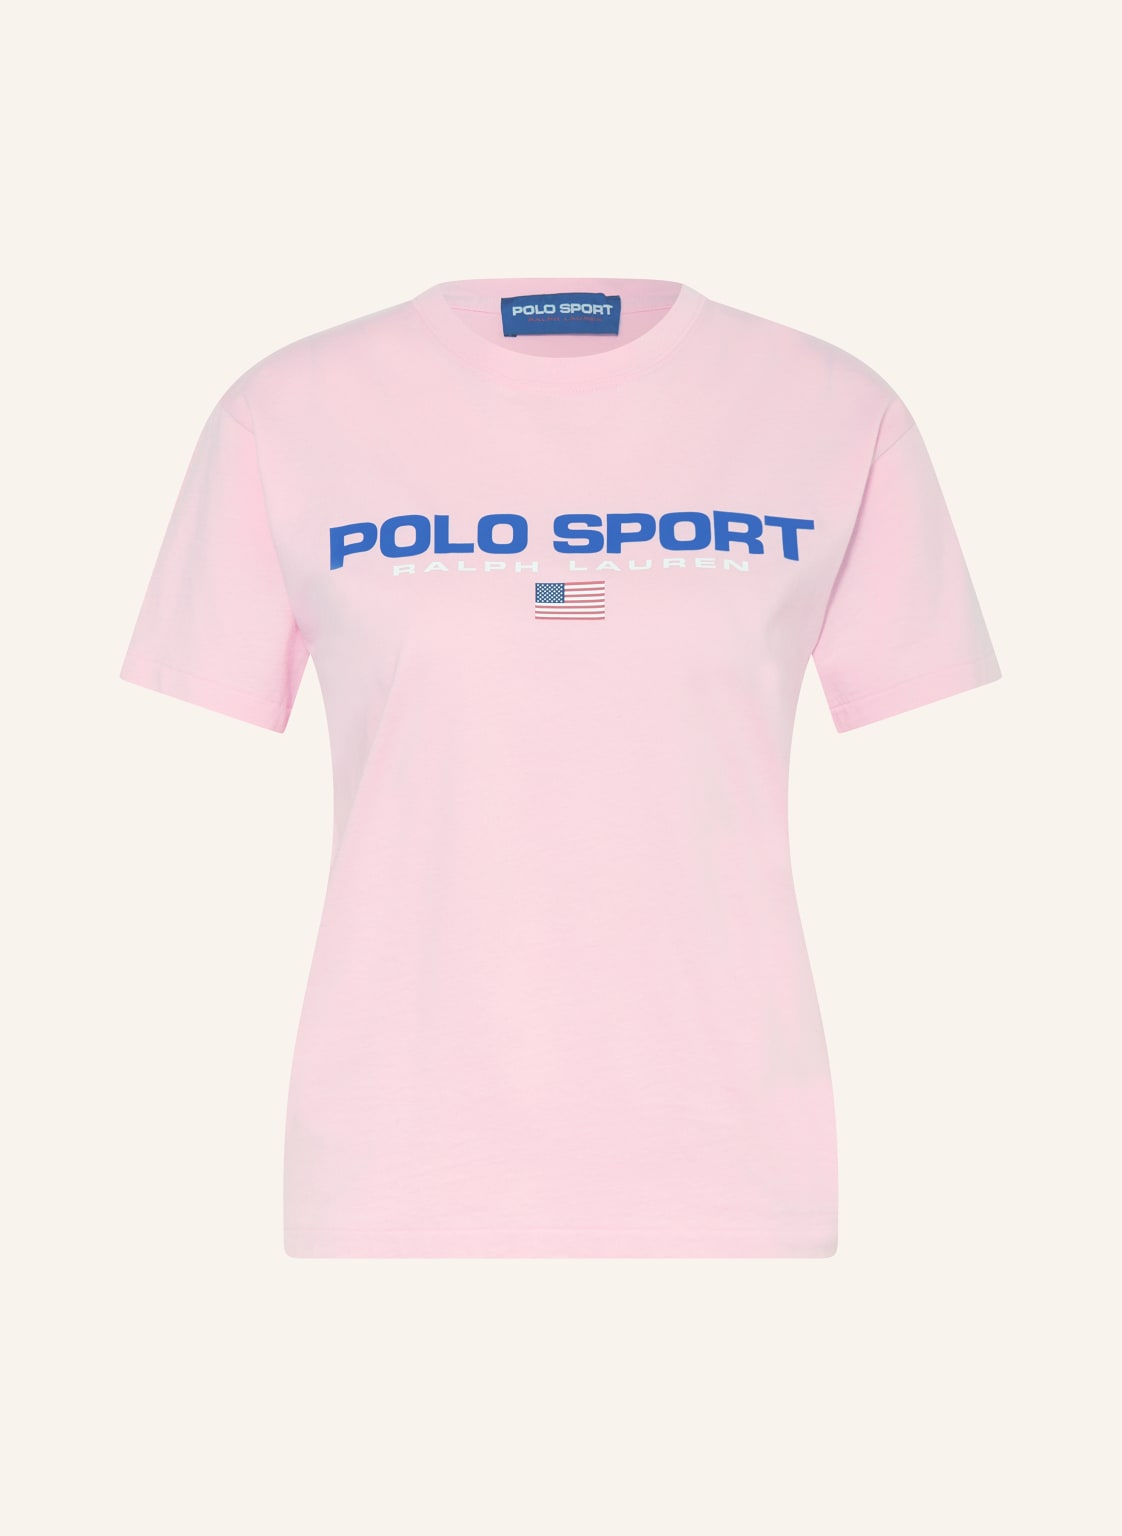 Polo Sport T-Shirt rosa von POLO SPORT